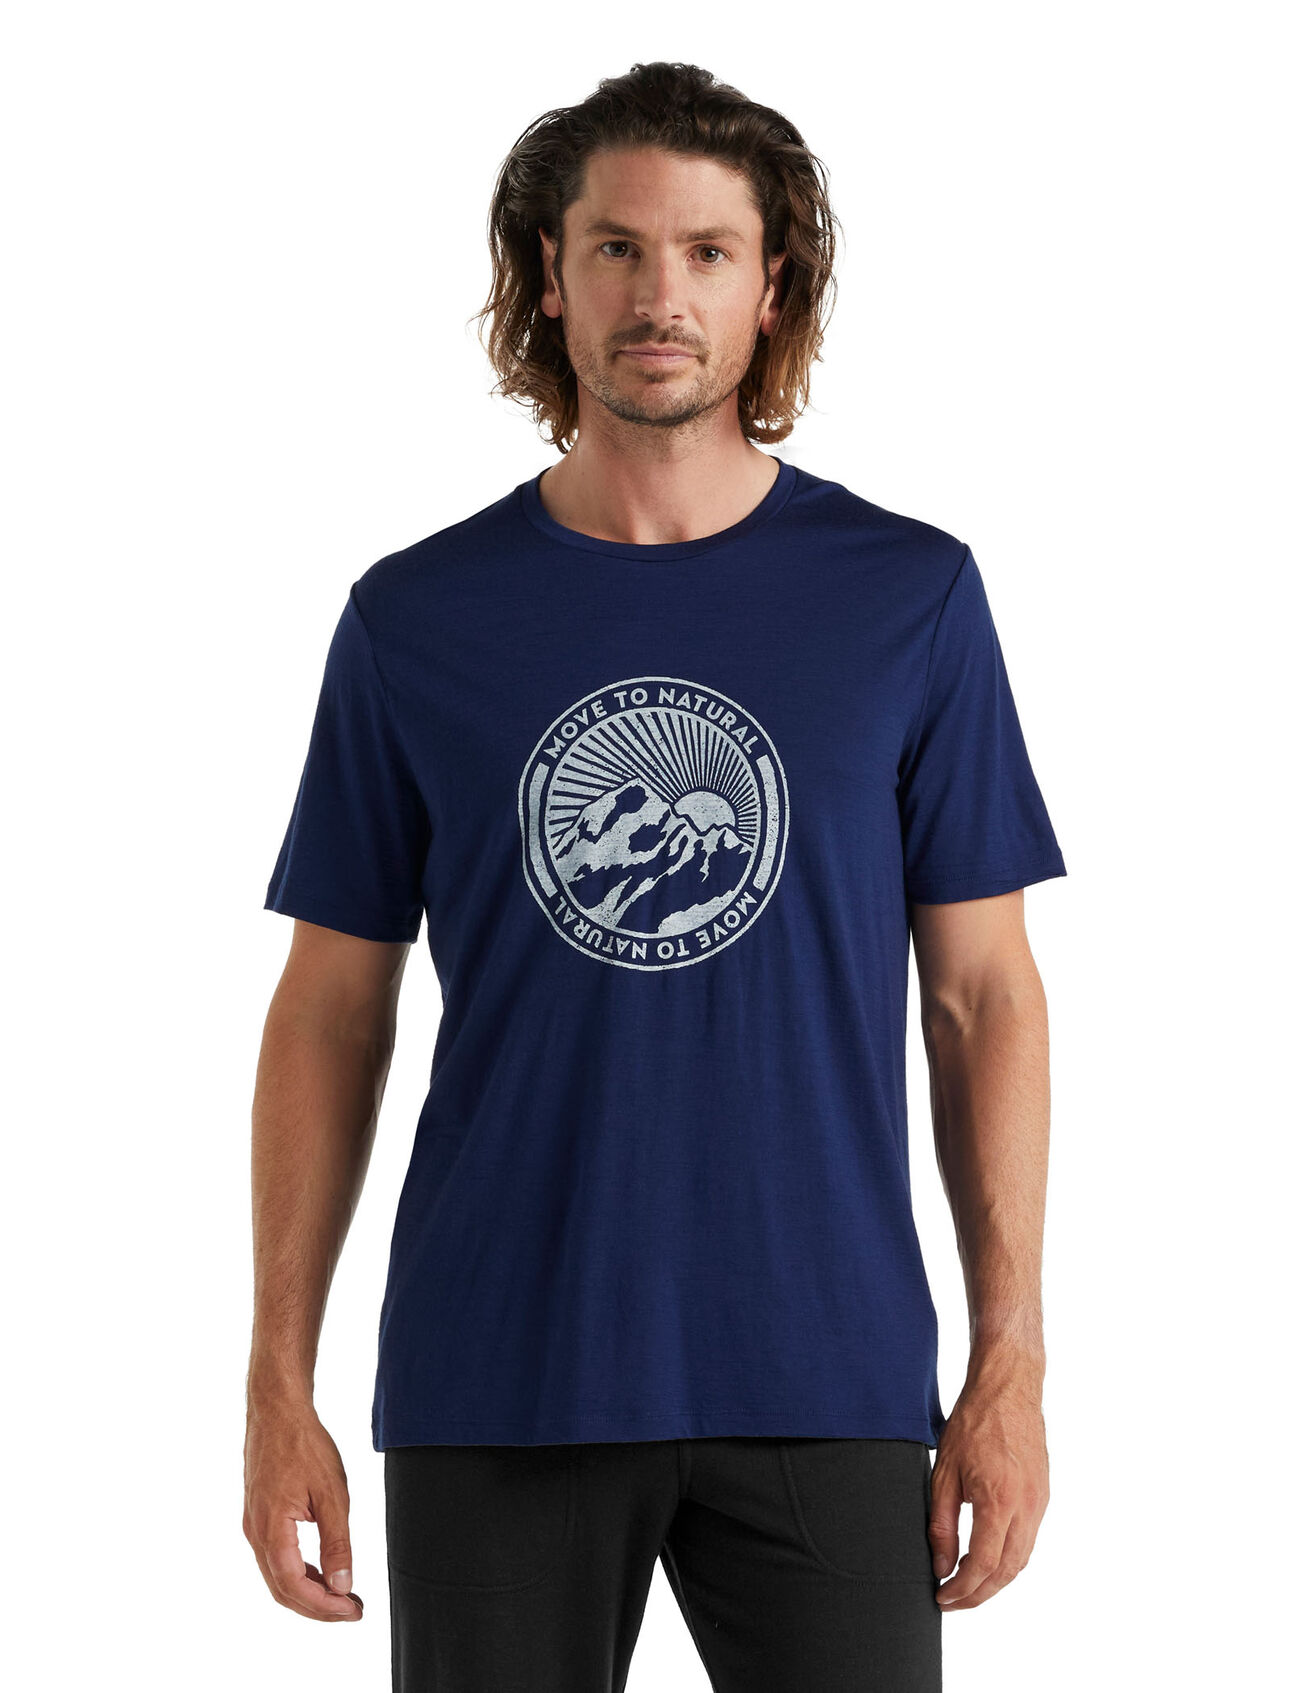 T-shirt Tech Lite II en mérinos, Move to Natural Mountain